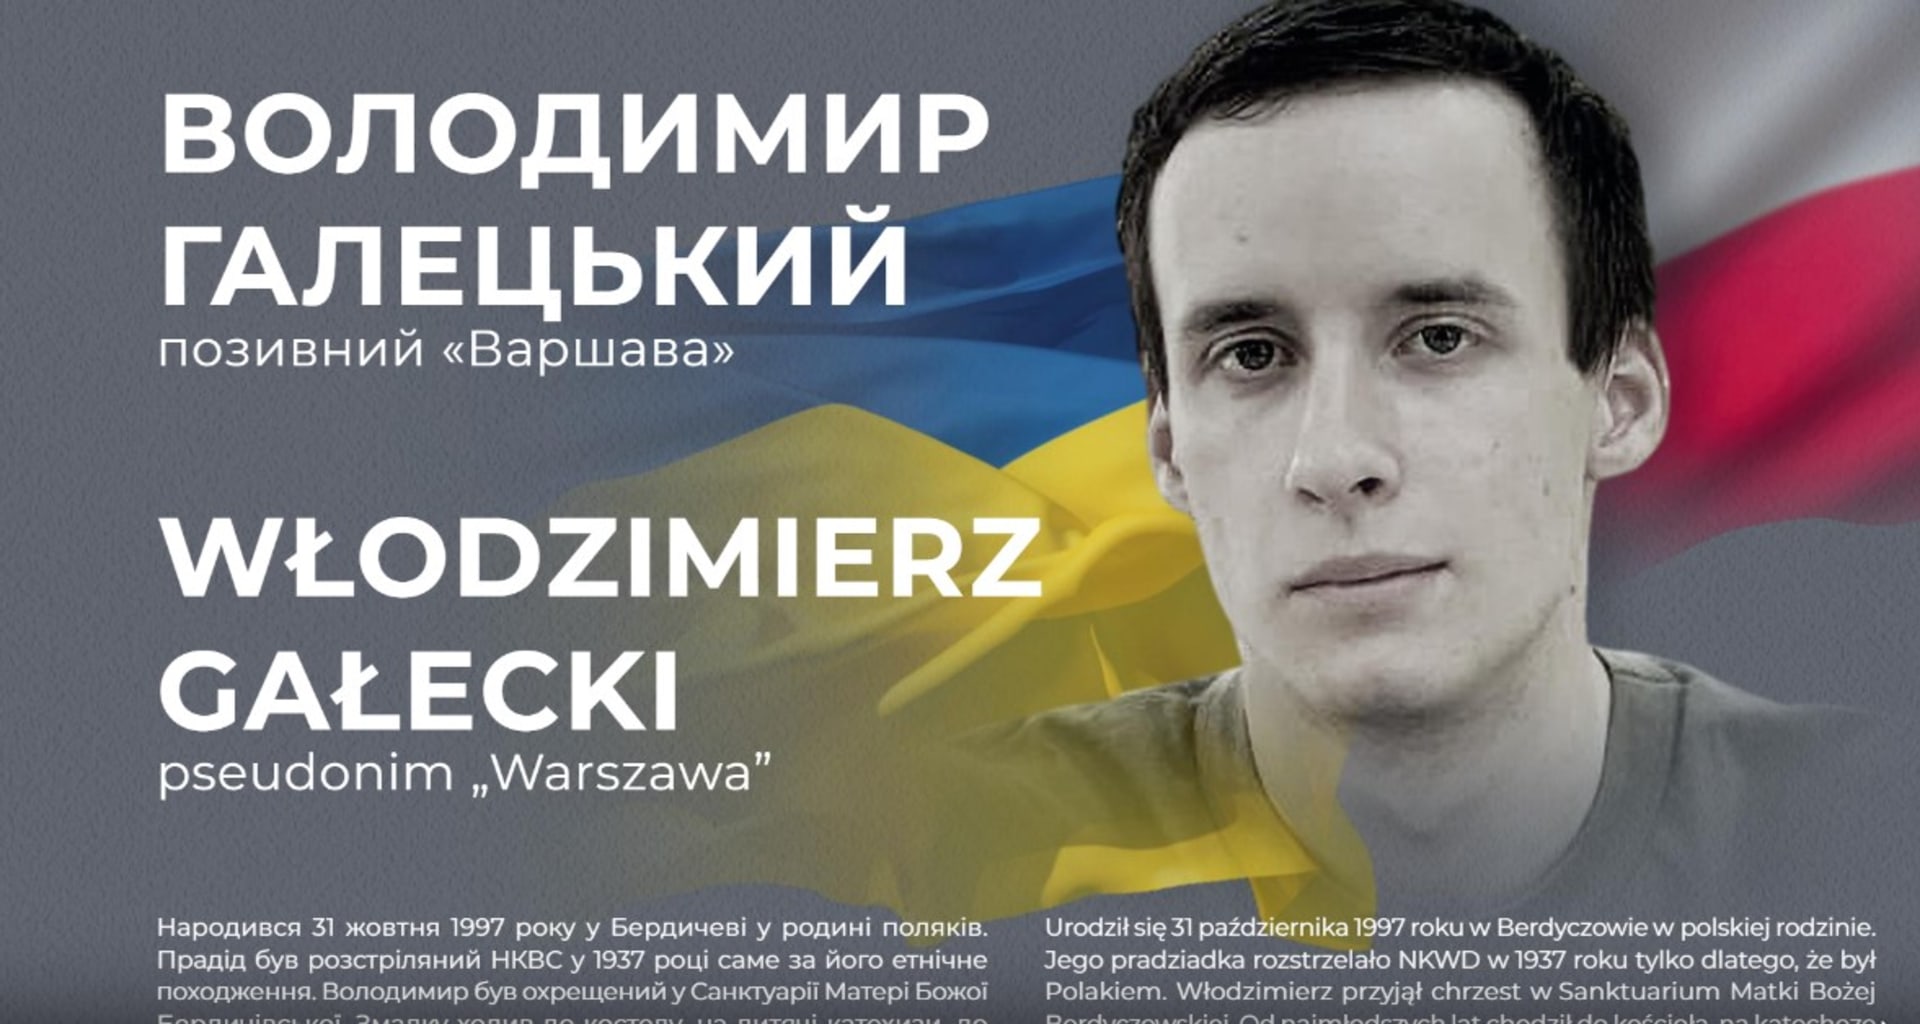 Ukrajinský voják Włodzimierz Gałecki zemřel v bojích o město Kupjansk v Charkovské oblasti